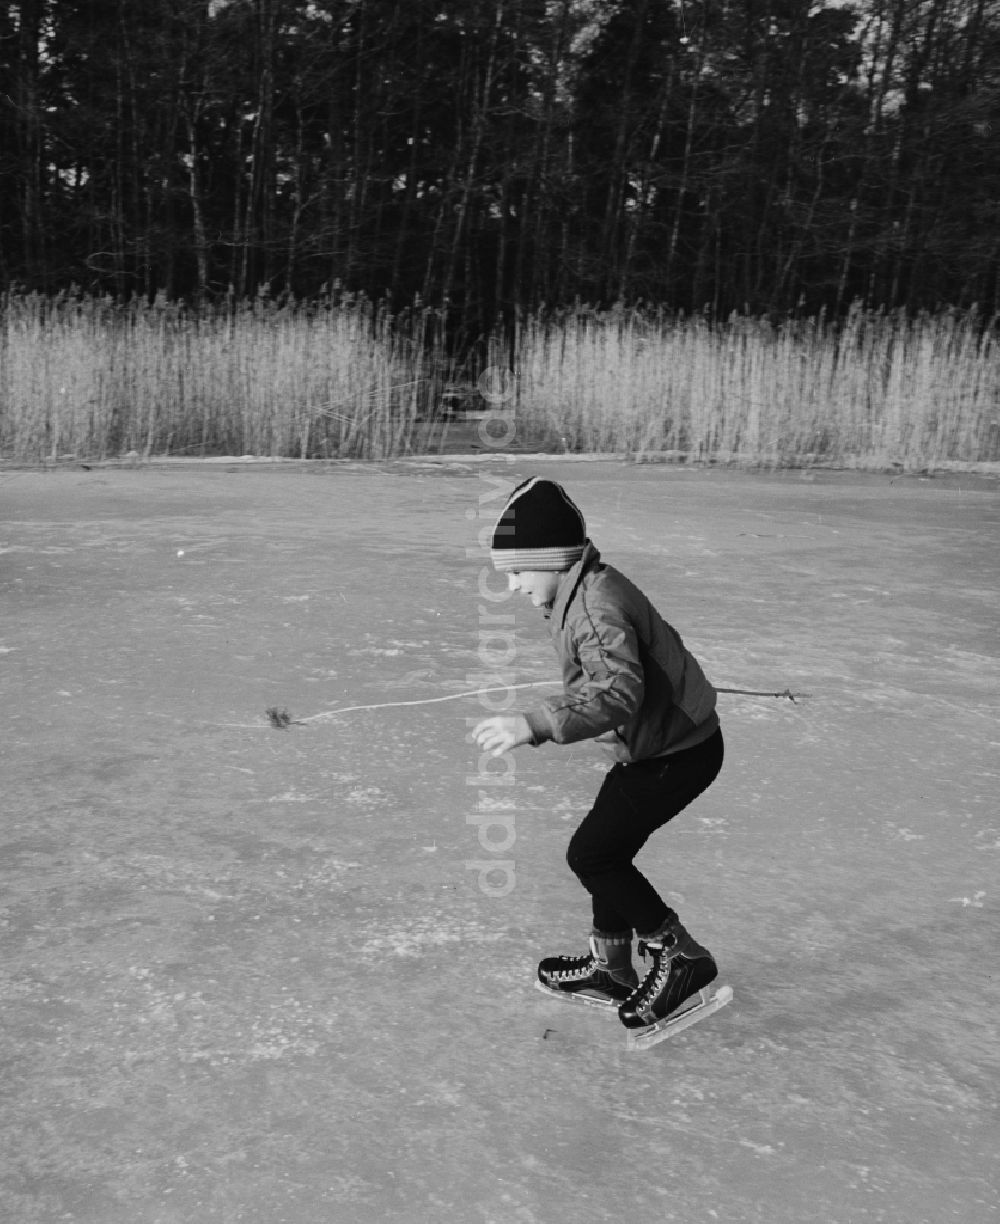 DDR-Bildarchiv: Grünheide (Mark) - Junge beim Schlittschuhlaufen auf einem zugefrorenen See in Grünheide (Mark) im heutigen Bundesland Brandenburg